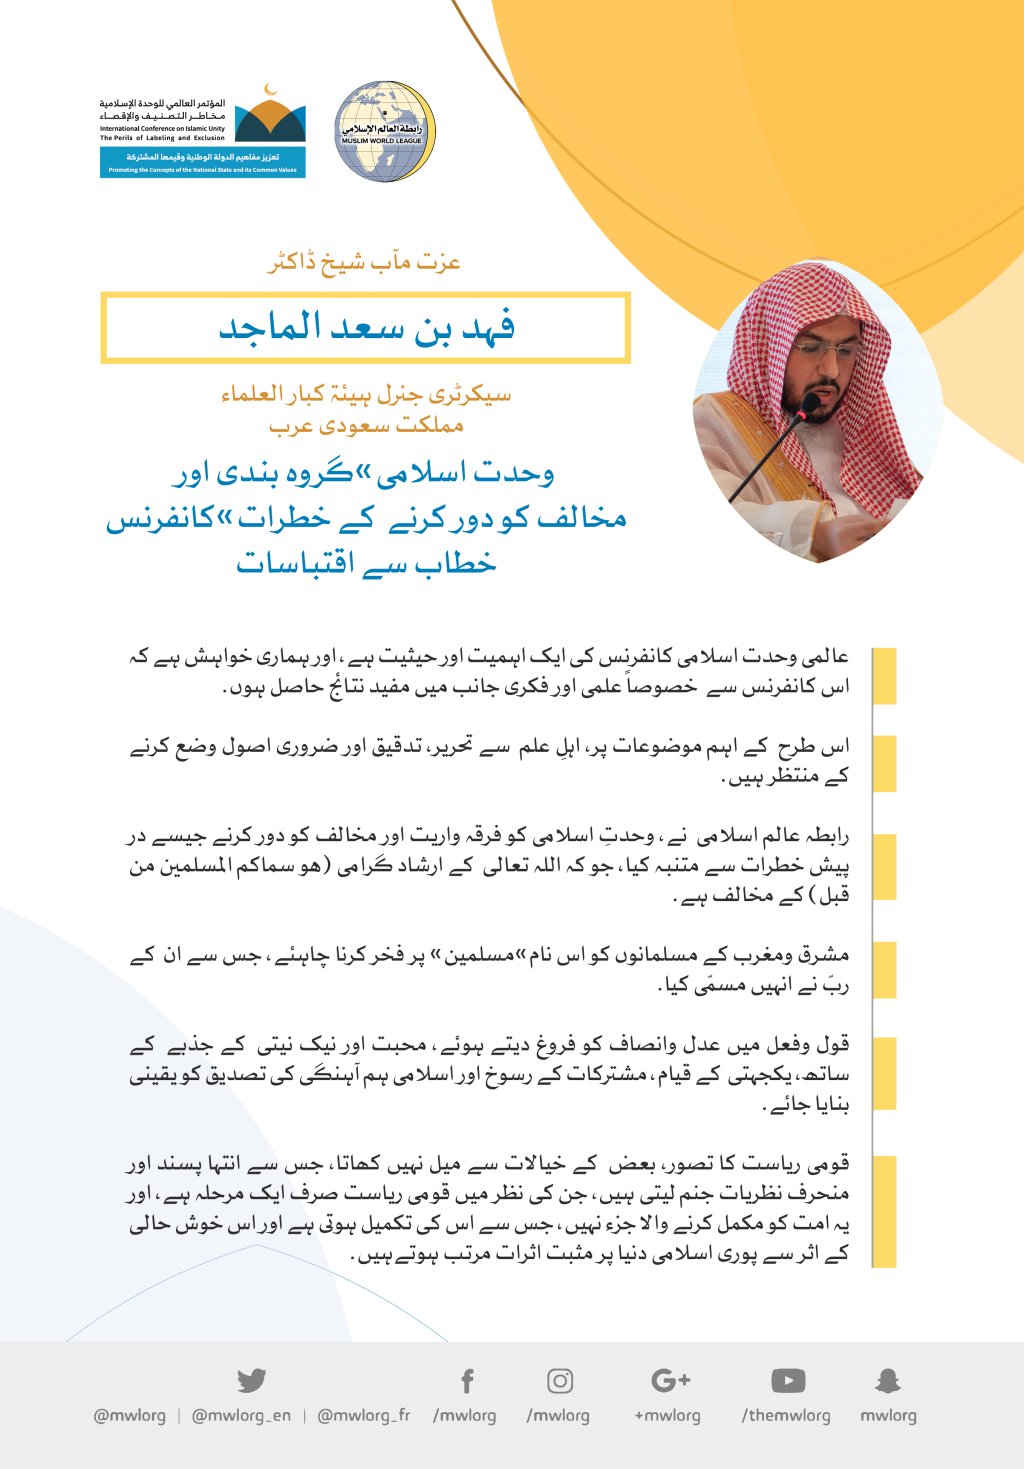 رابطہ عالم اسلامی کی کانفرنس سے عزت مآب شیخ ڈاکٹر فہد بن سعد الماجد